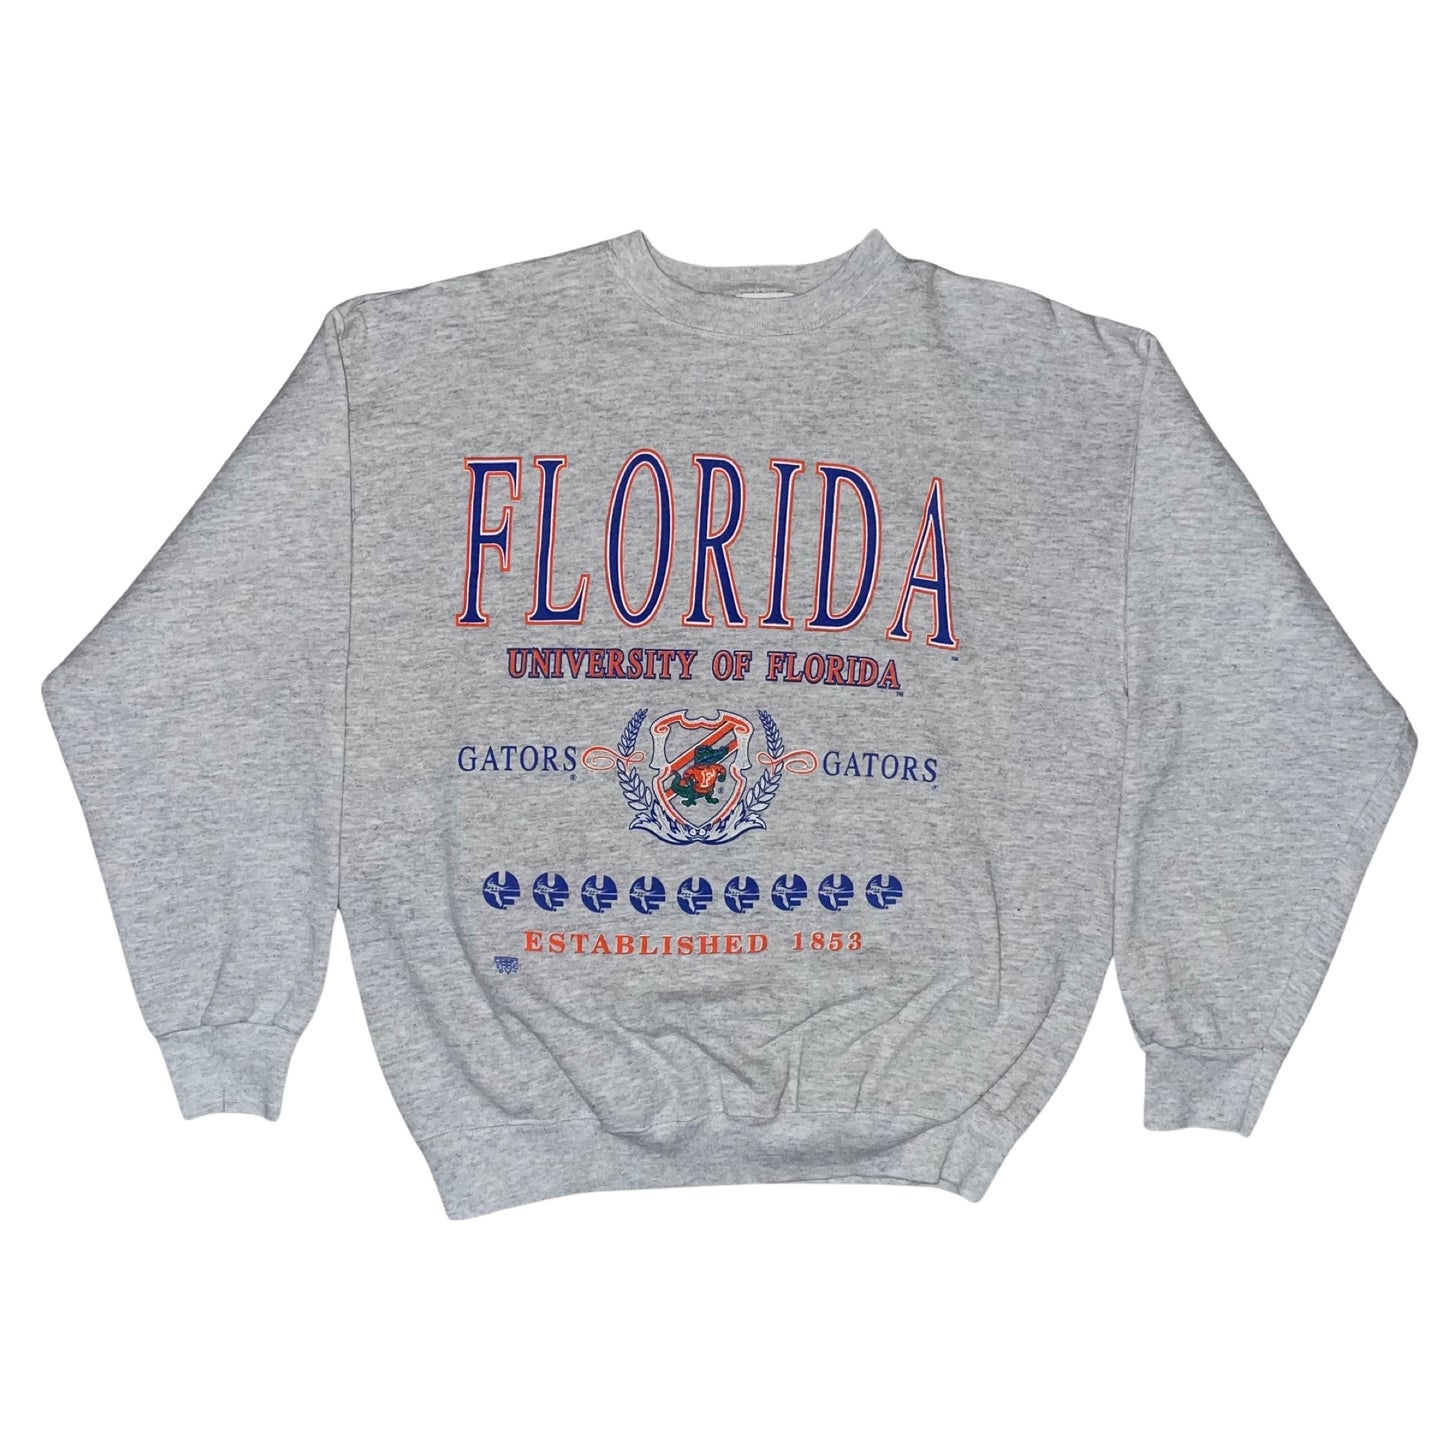 Florida Gators UF sweatshirt size LARGE